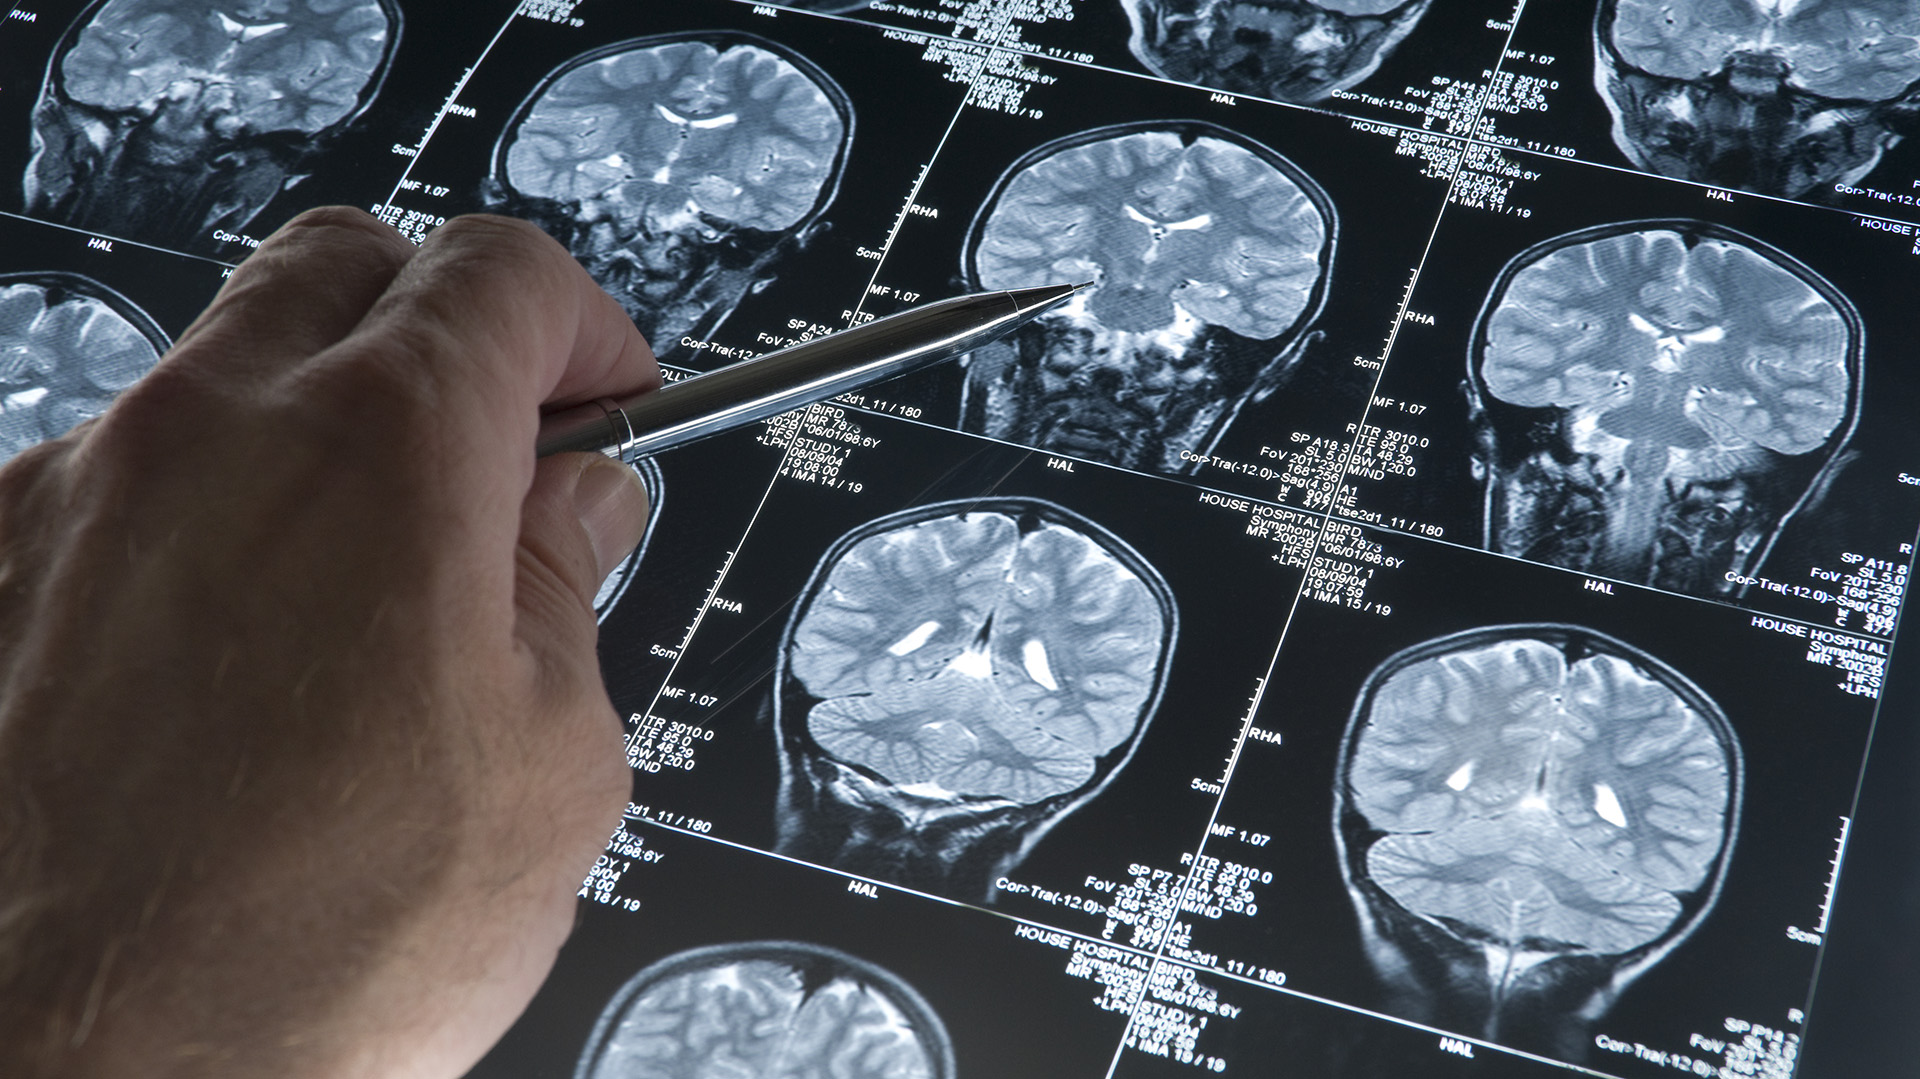 Los primeros cambios en el cerebro ocurren mucho tiempo antes de los primeros síntomas de Alzheimer (Getty)